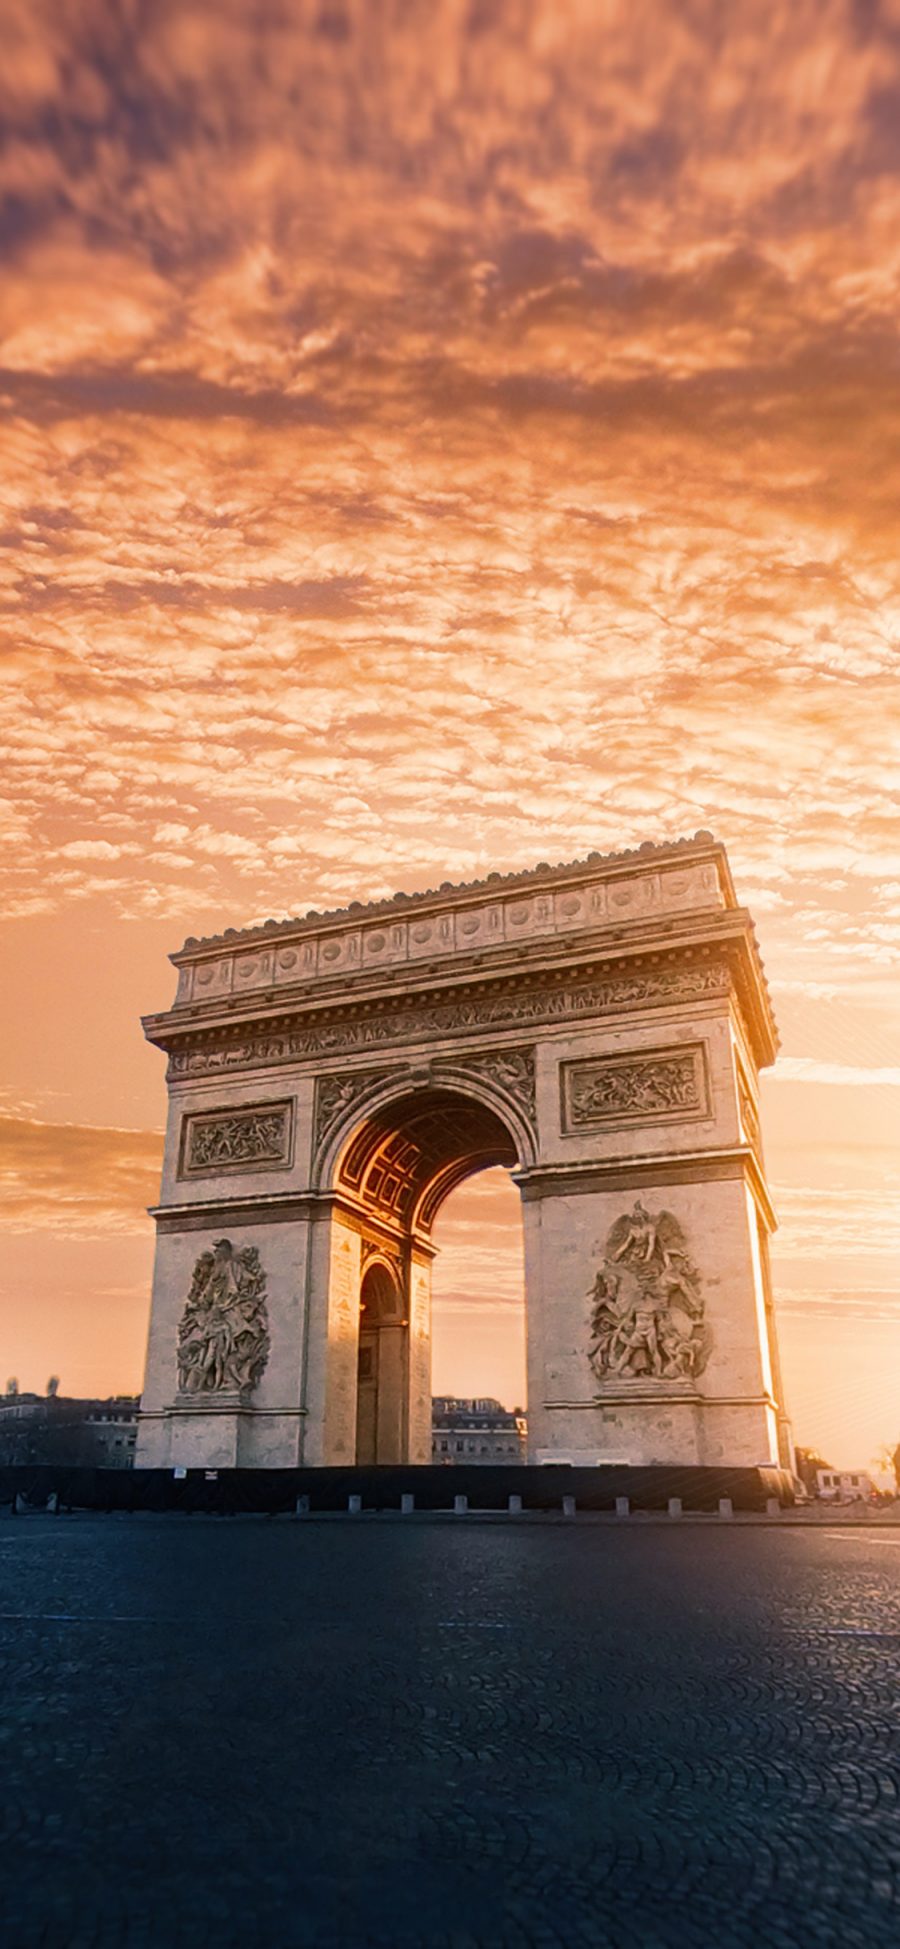 [2436×1125]凯旋门 巴黎 法国 文物 历史 建筑 苹果手机壁纸图片